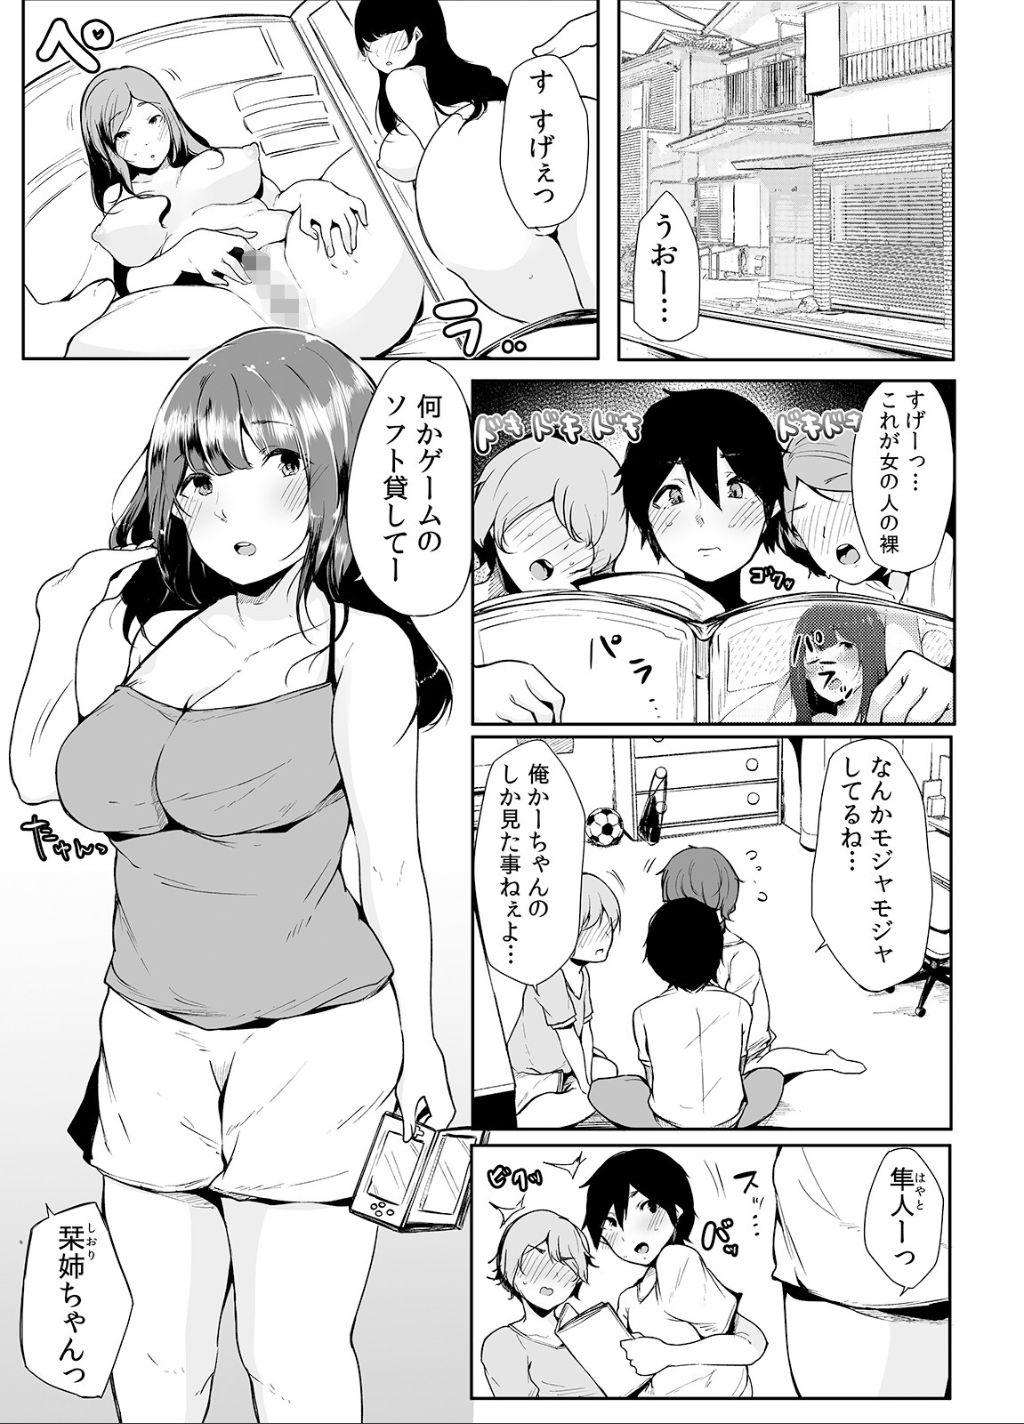 Curves Otouto ni Ero Manga to Onaji Koto o Sare Chau o Nee-chan no Hanashi 1 - Original Dirty - Page 4